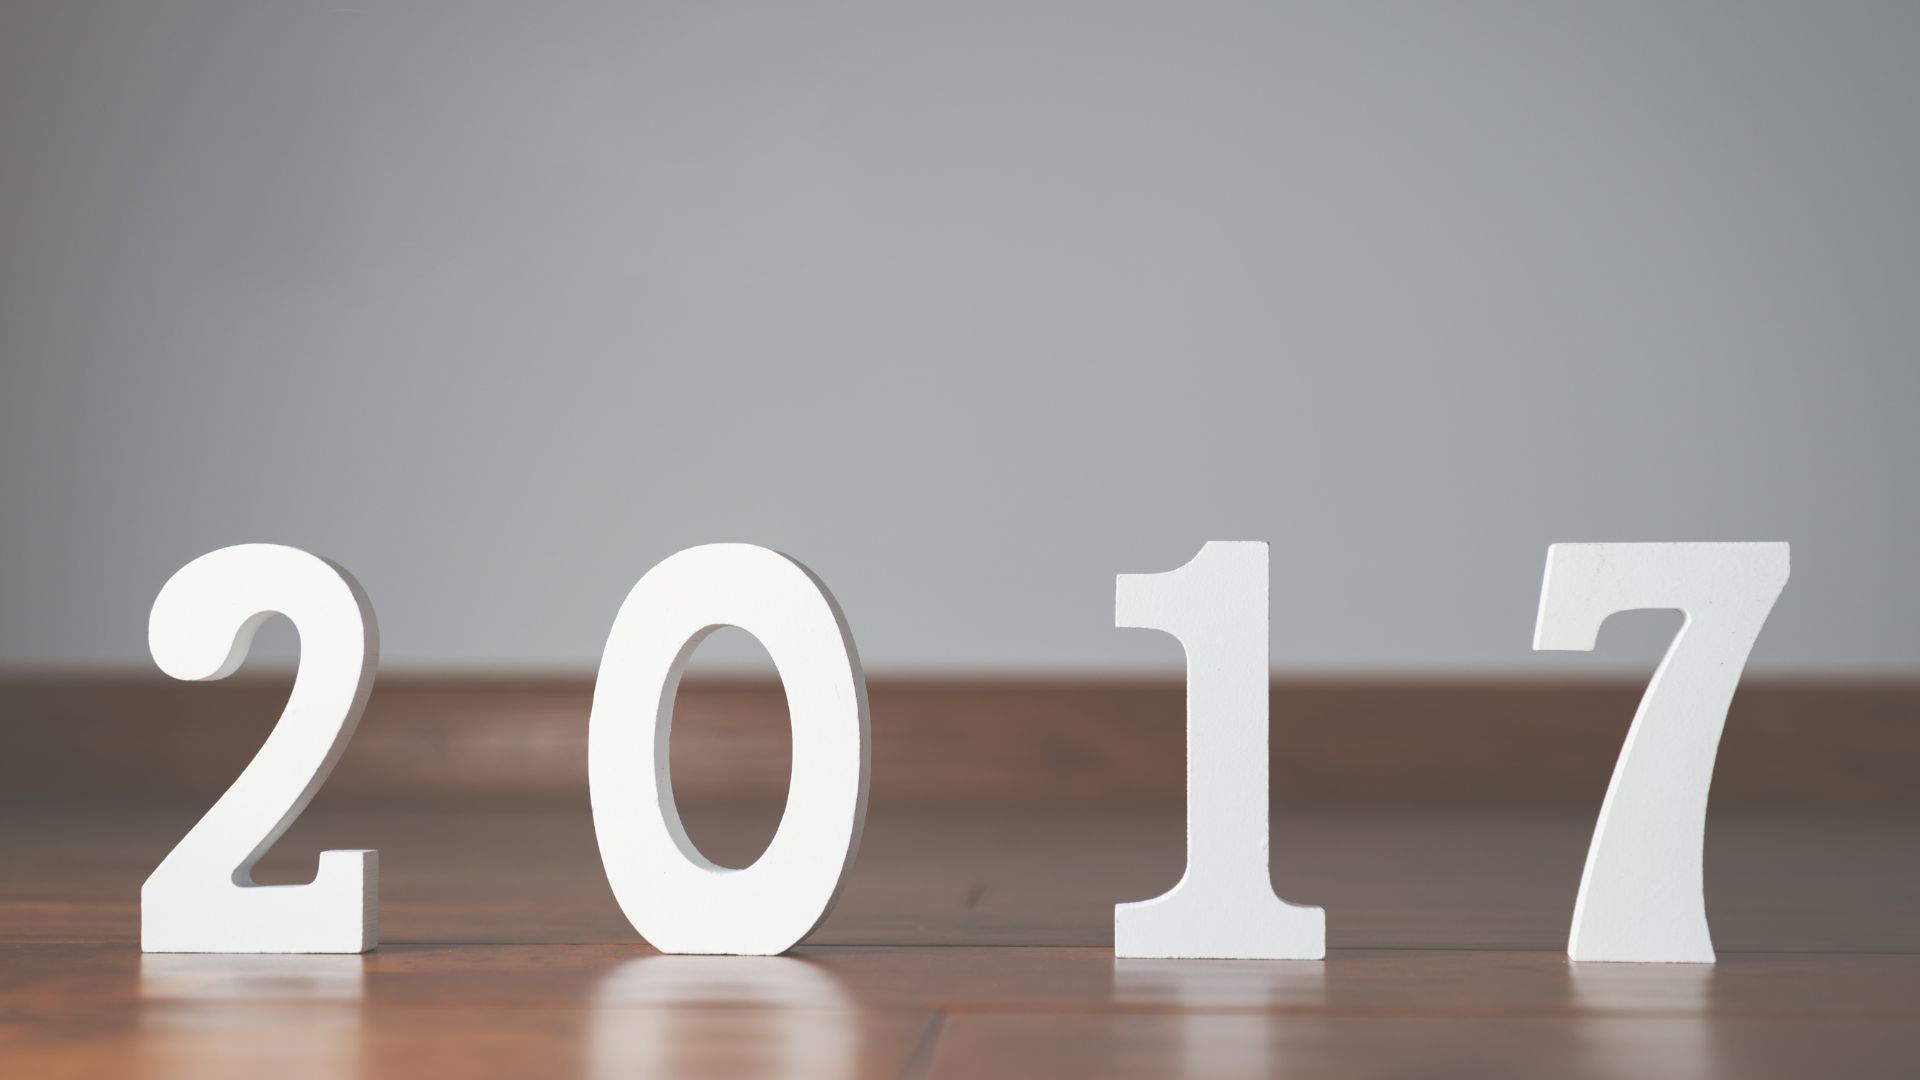 Imagem de fundo cinza, trazendo o número de 2017 escrito em branco para celabrar a entrada deste novo ano.